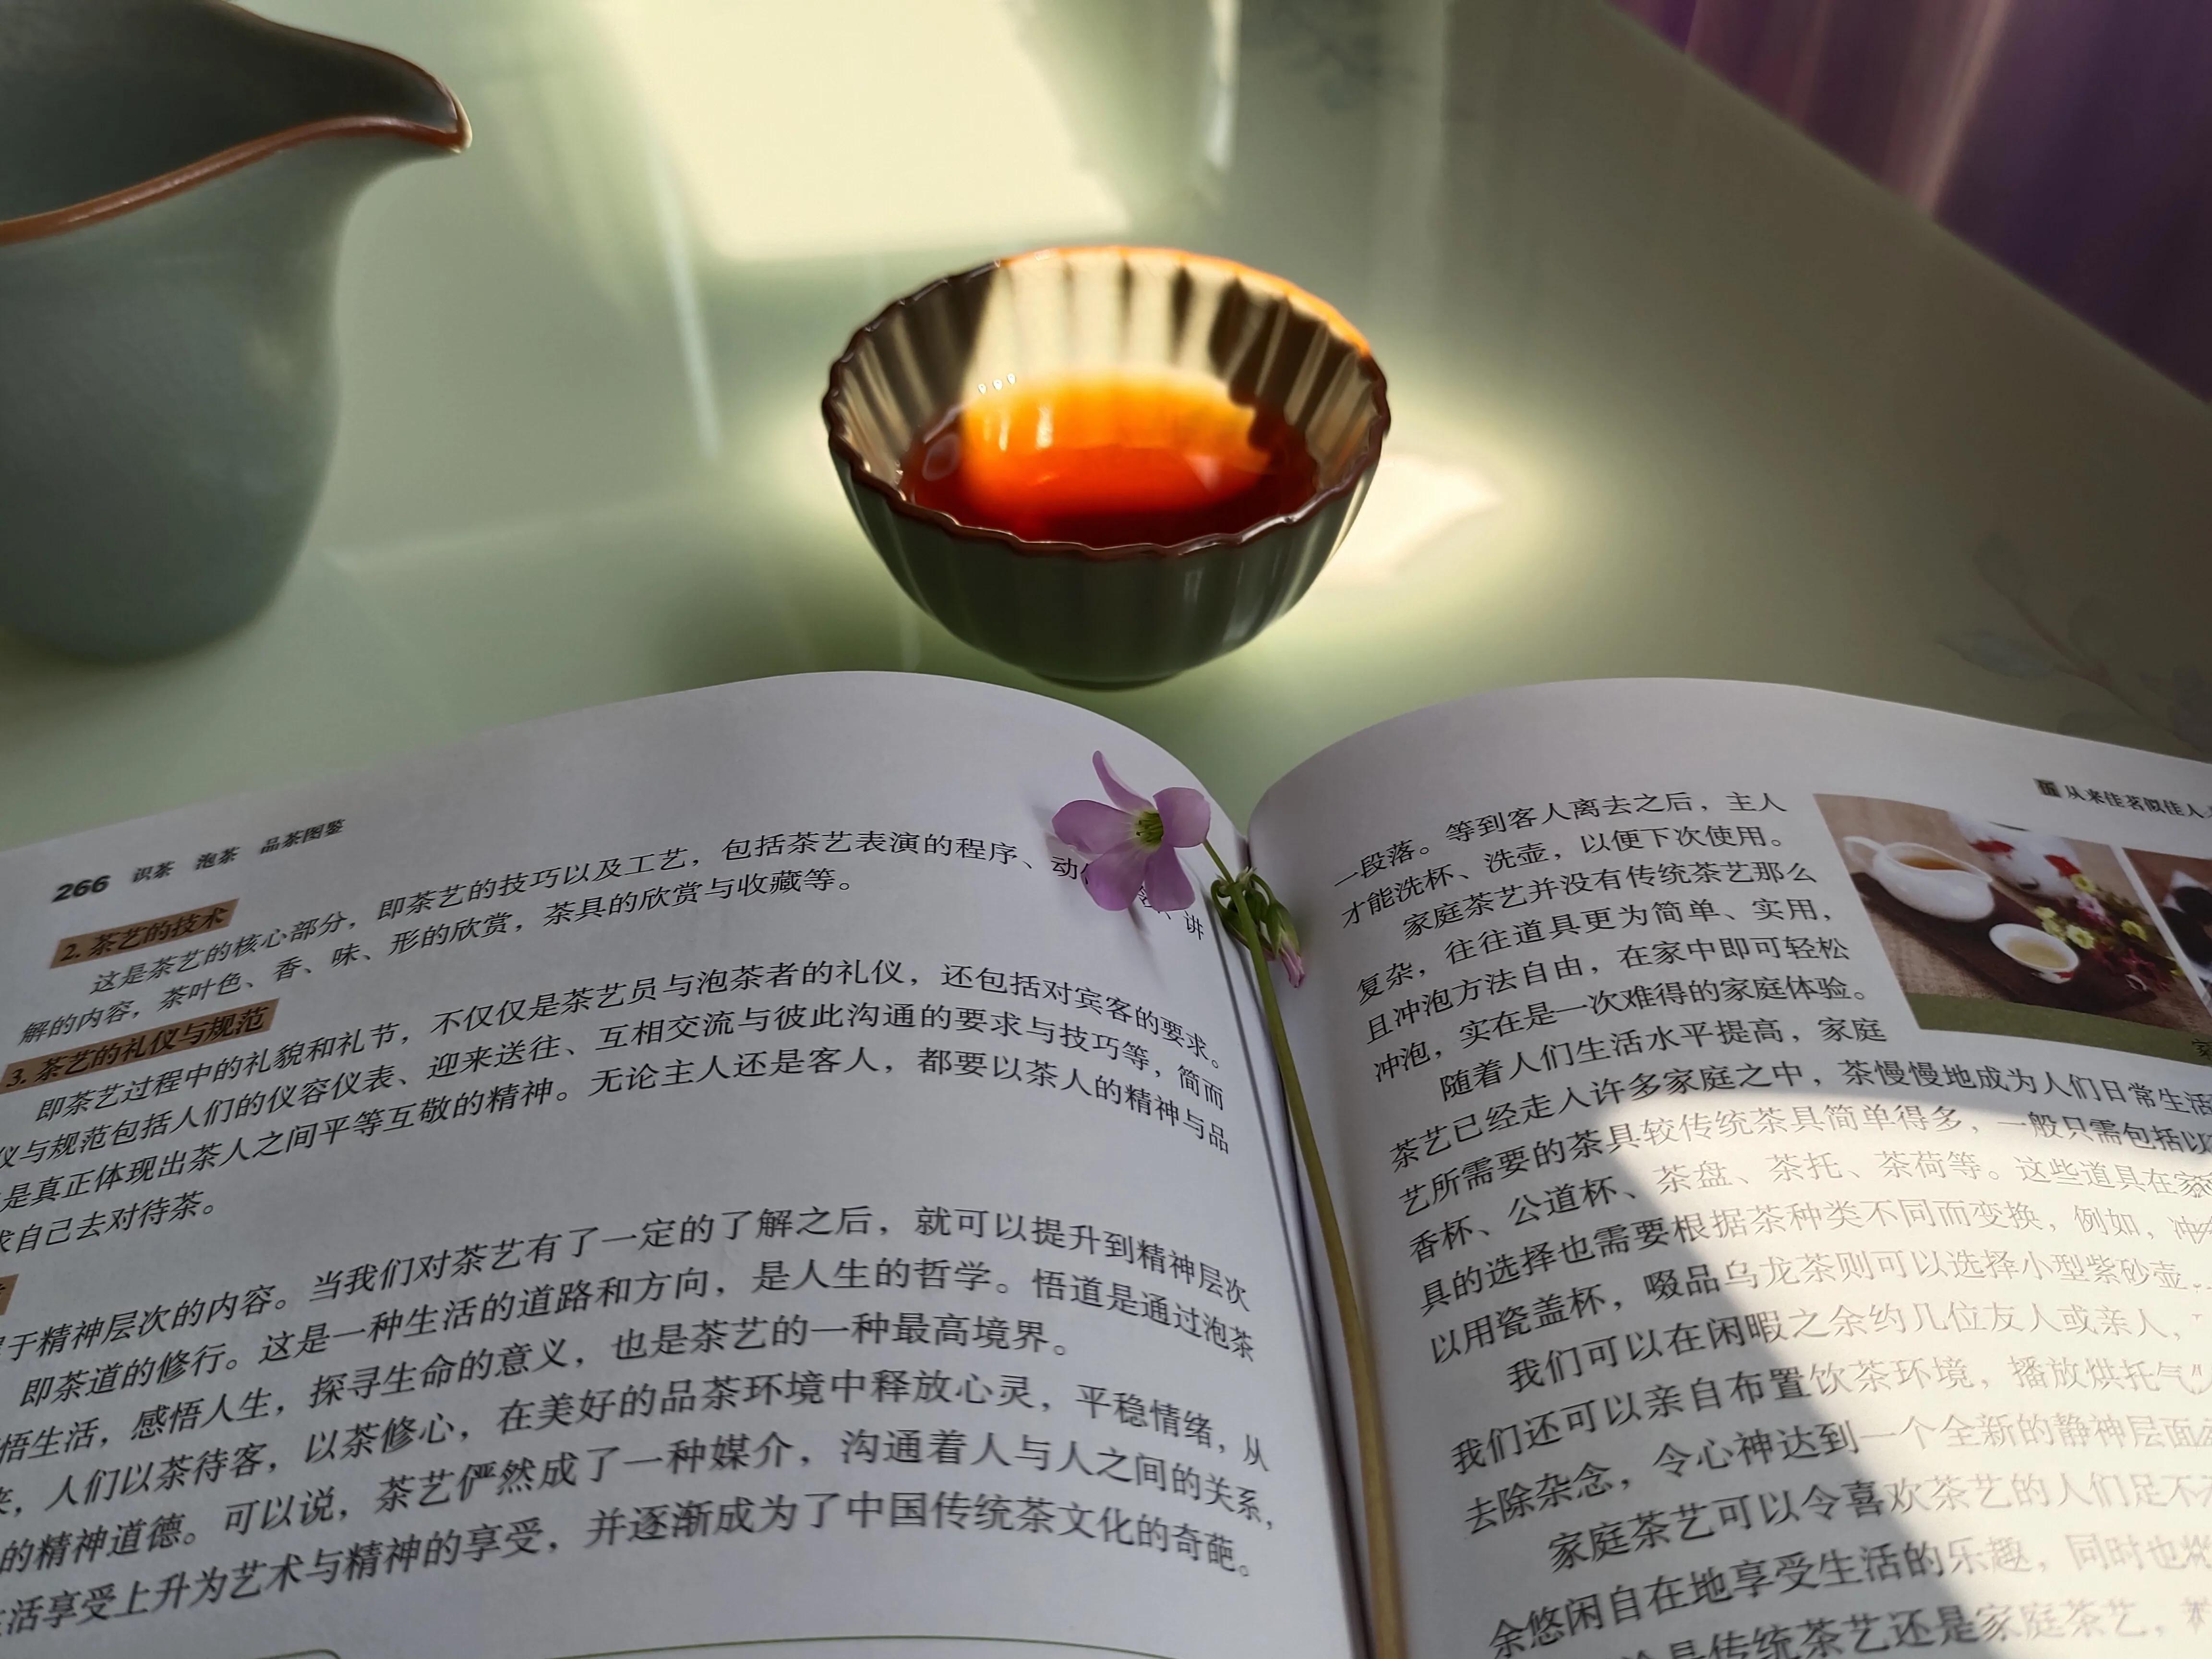 一杯茶水一本书的图片图片